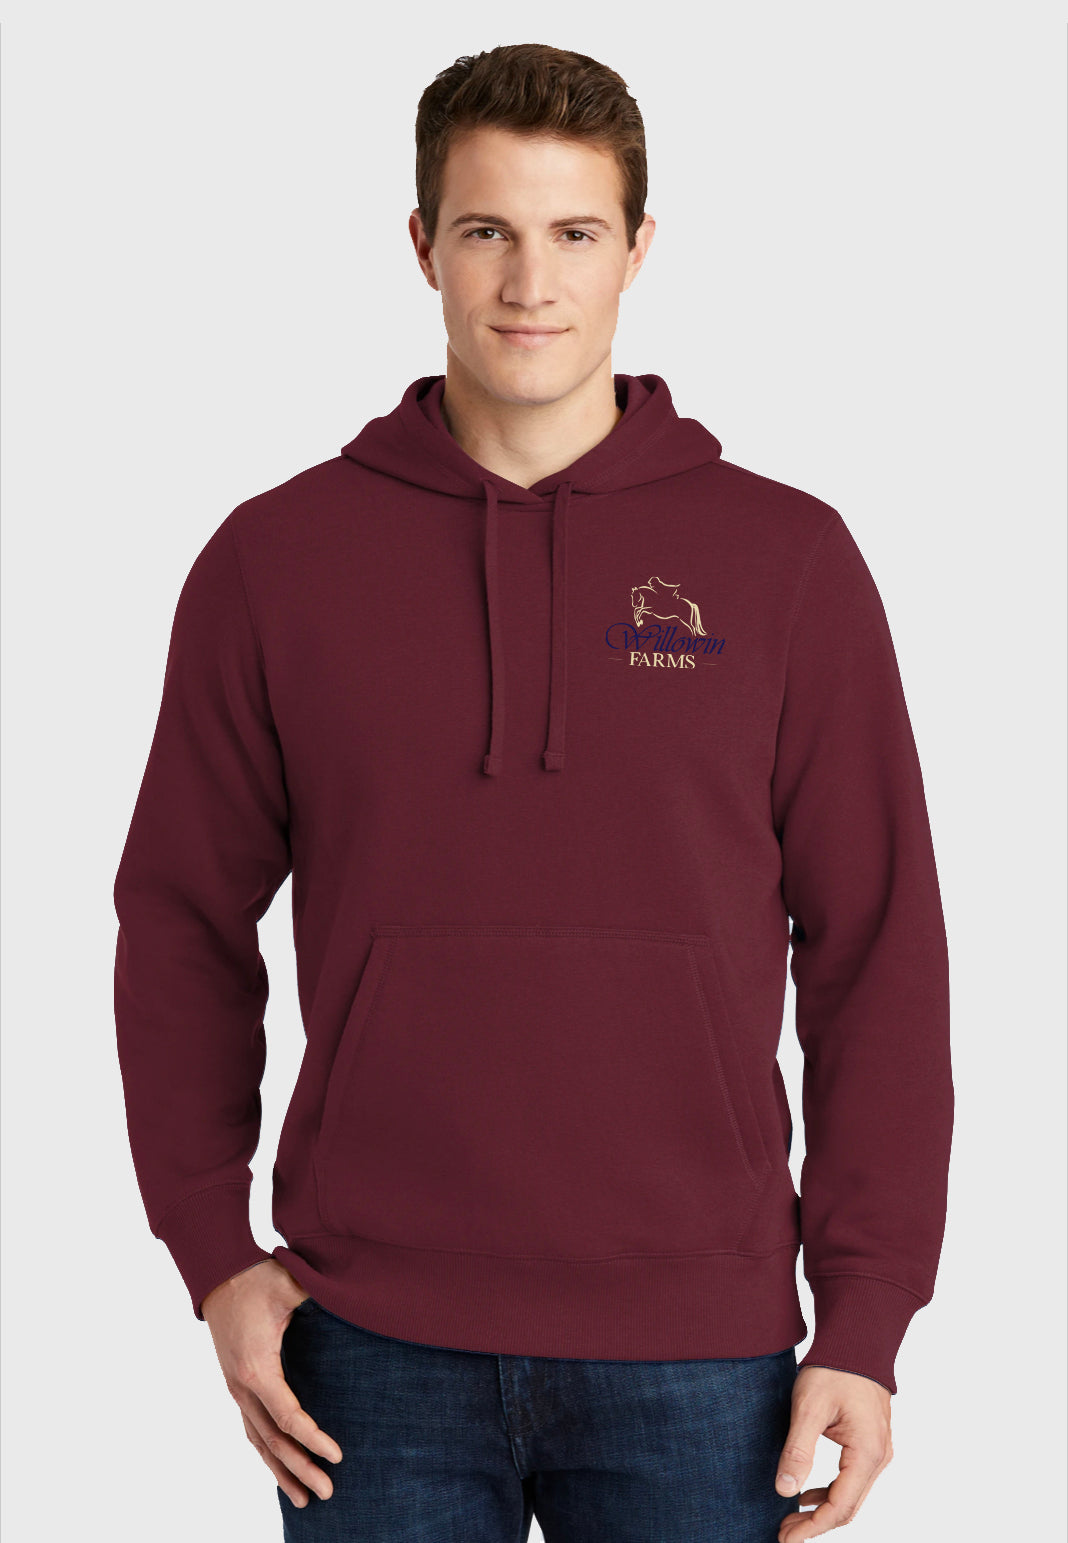 Willowin Farms Sport-Tek® Mens Pullover Hooded Sweatshirt - Navy, Maroon, or Vintage Heather